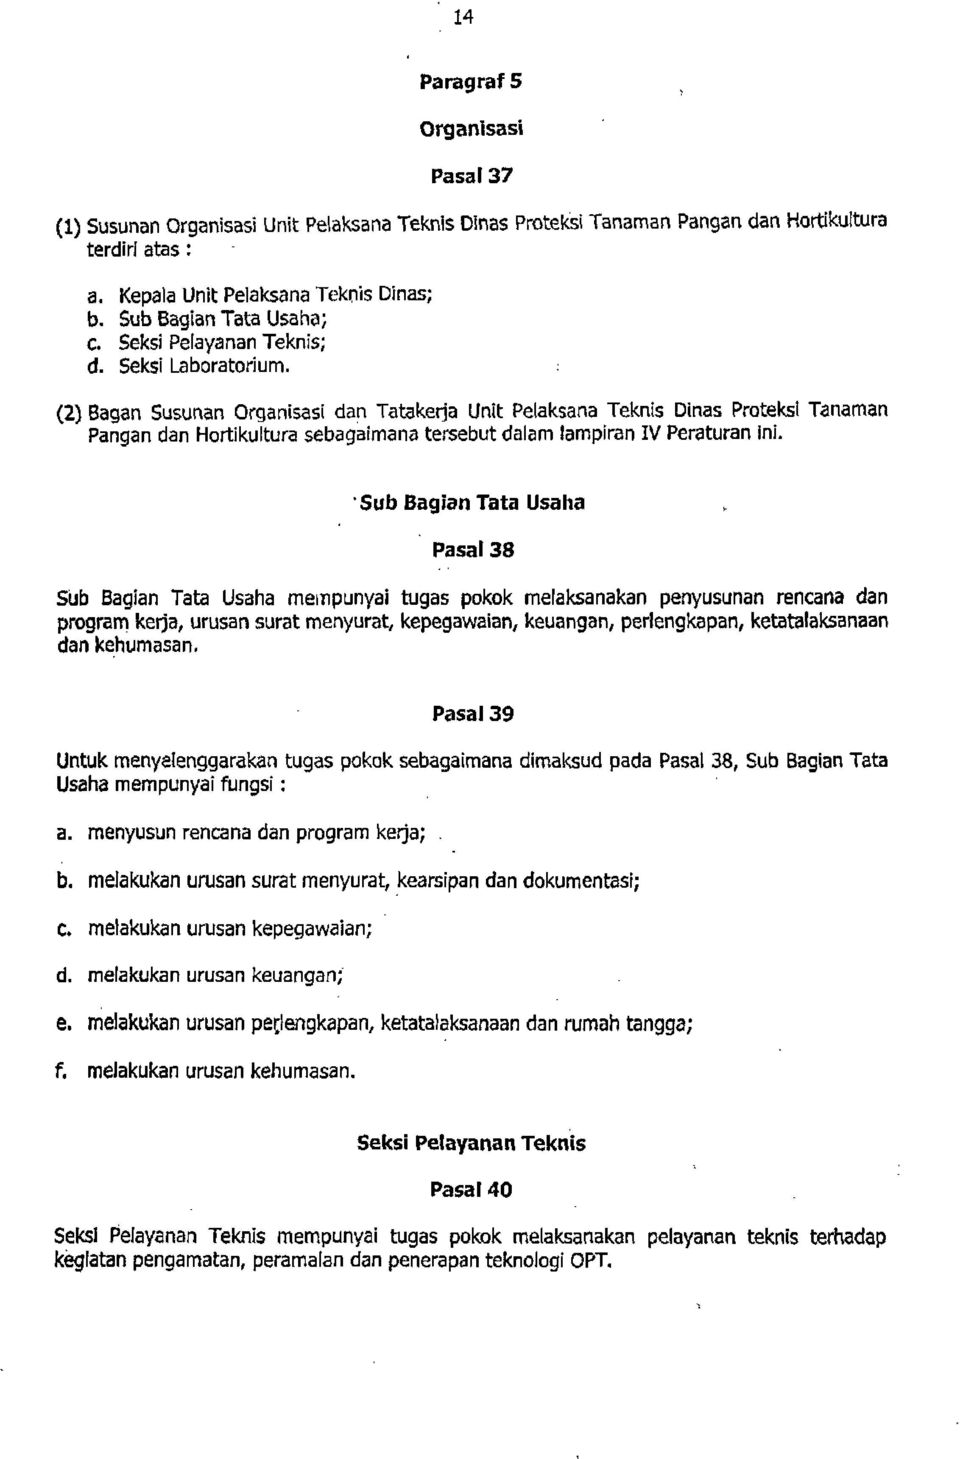 ; (2) Bagan Susunan Organisasi dan Tatakerja Unit Pelaksana Teknis Dinas Proteksi Tanaman Pangan dan Hortikultura sebagaimana tersebut dalam lampiran IV Peraturan ini.